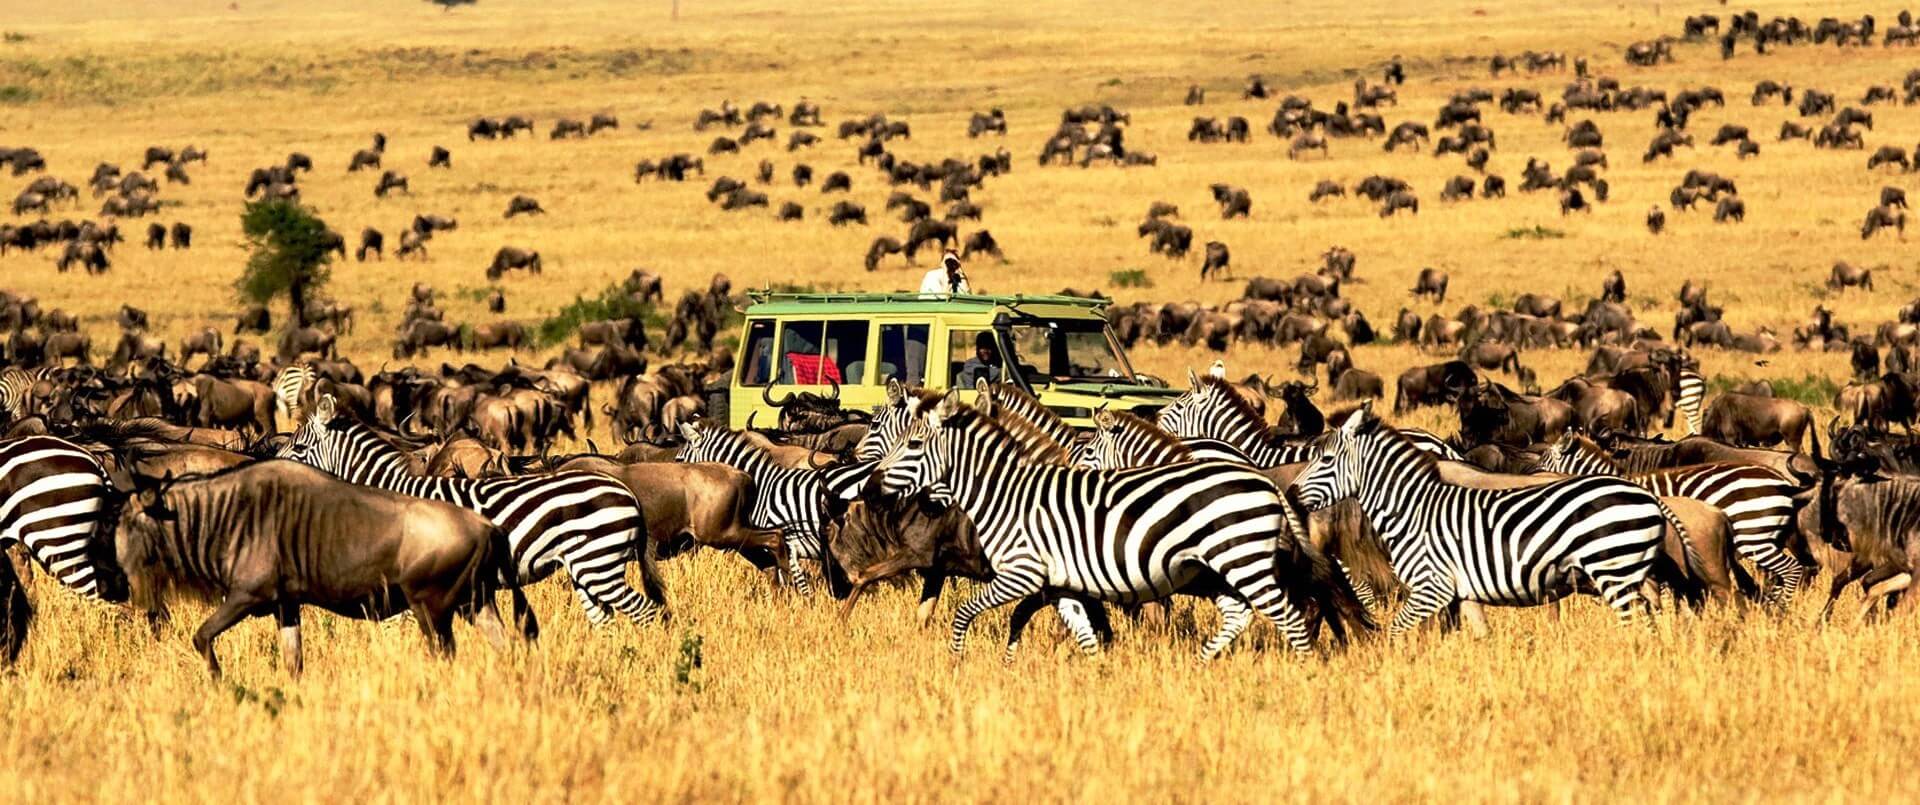 Landscape & Vegetation of Serengeti National Park